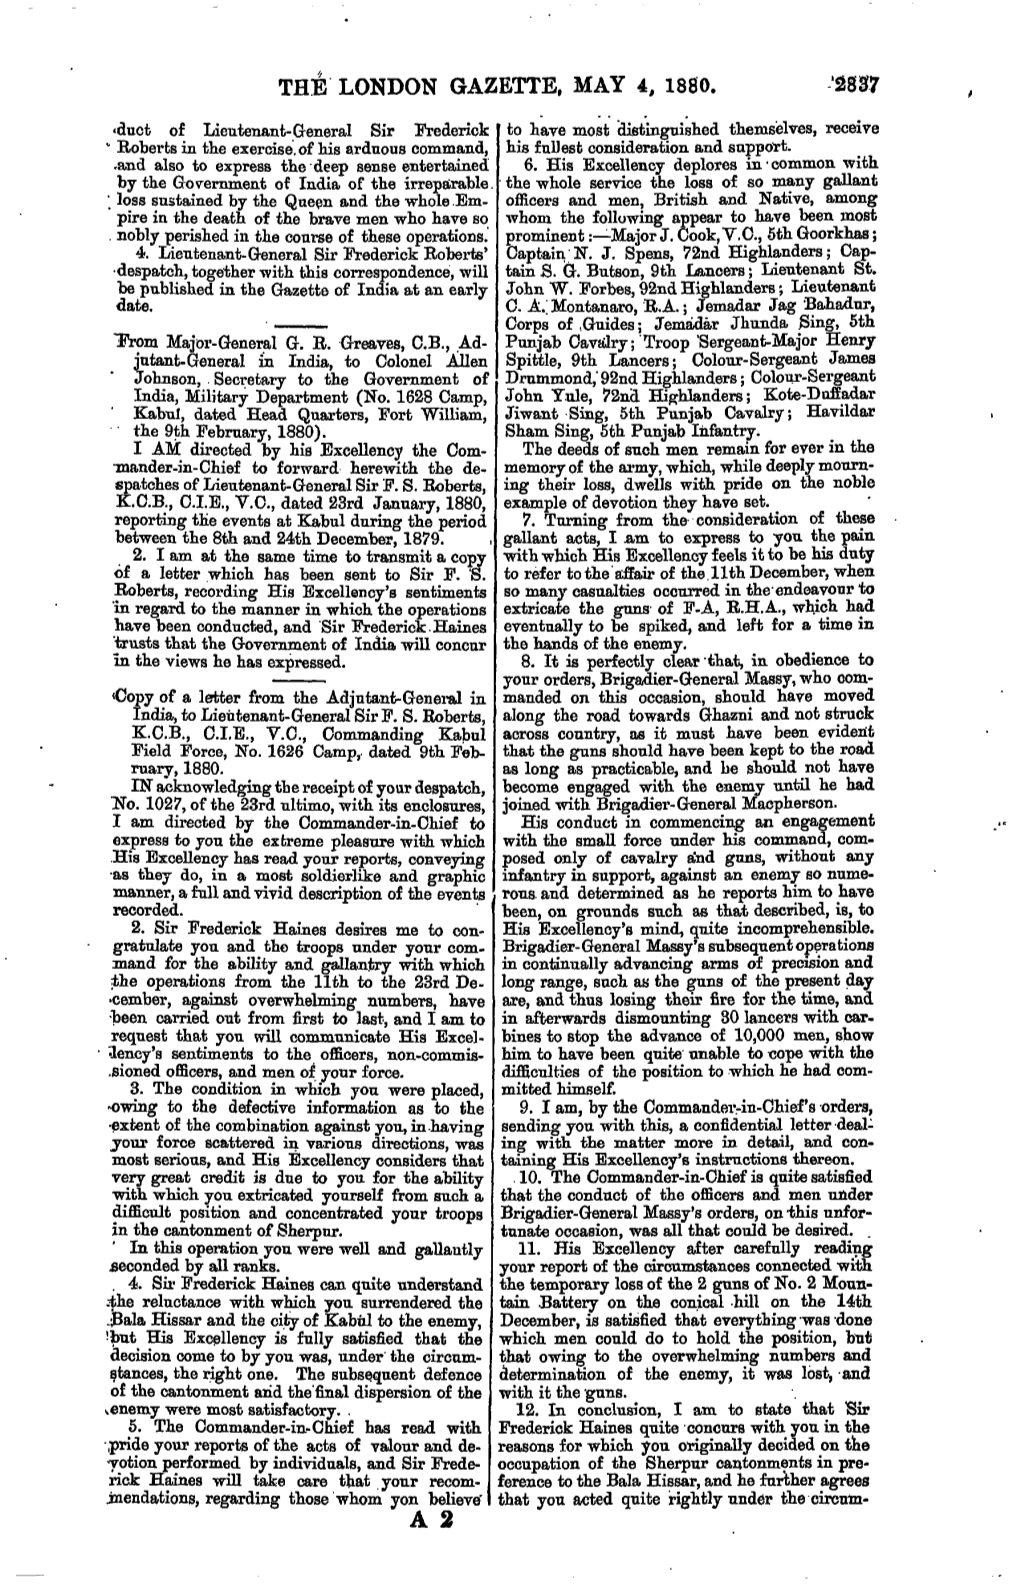 The London Gazette, May 4, 1880